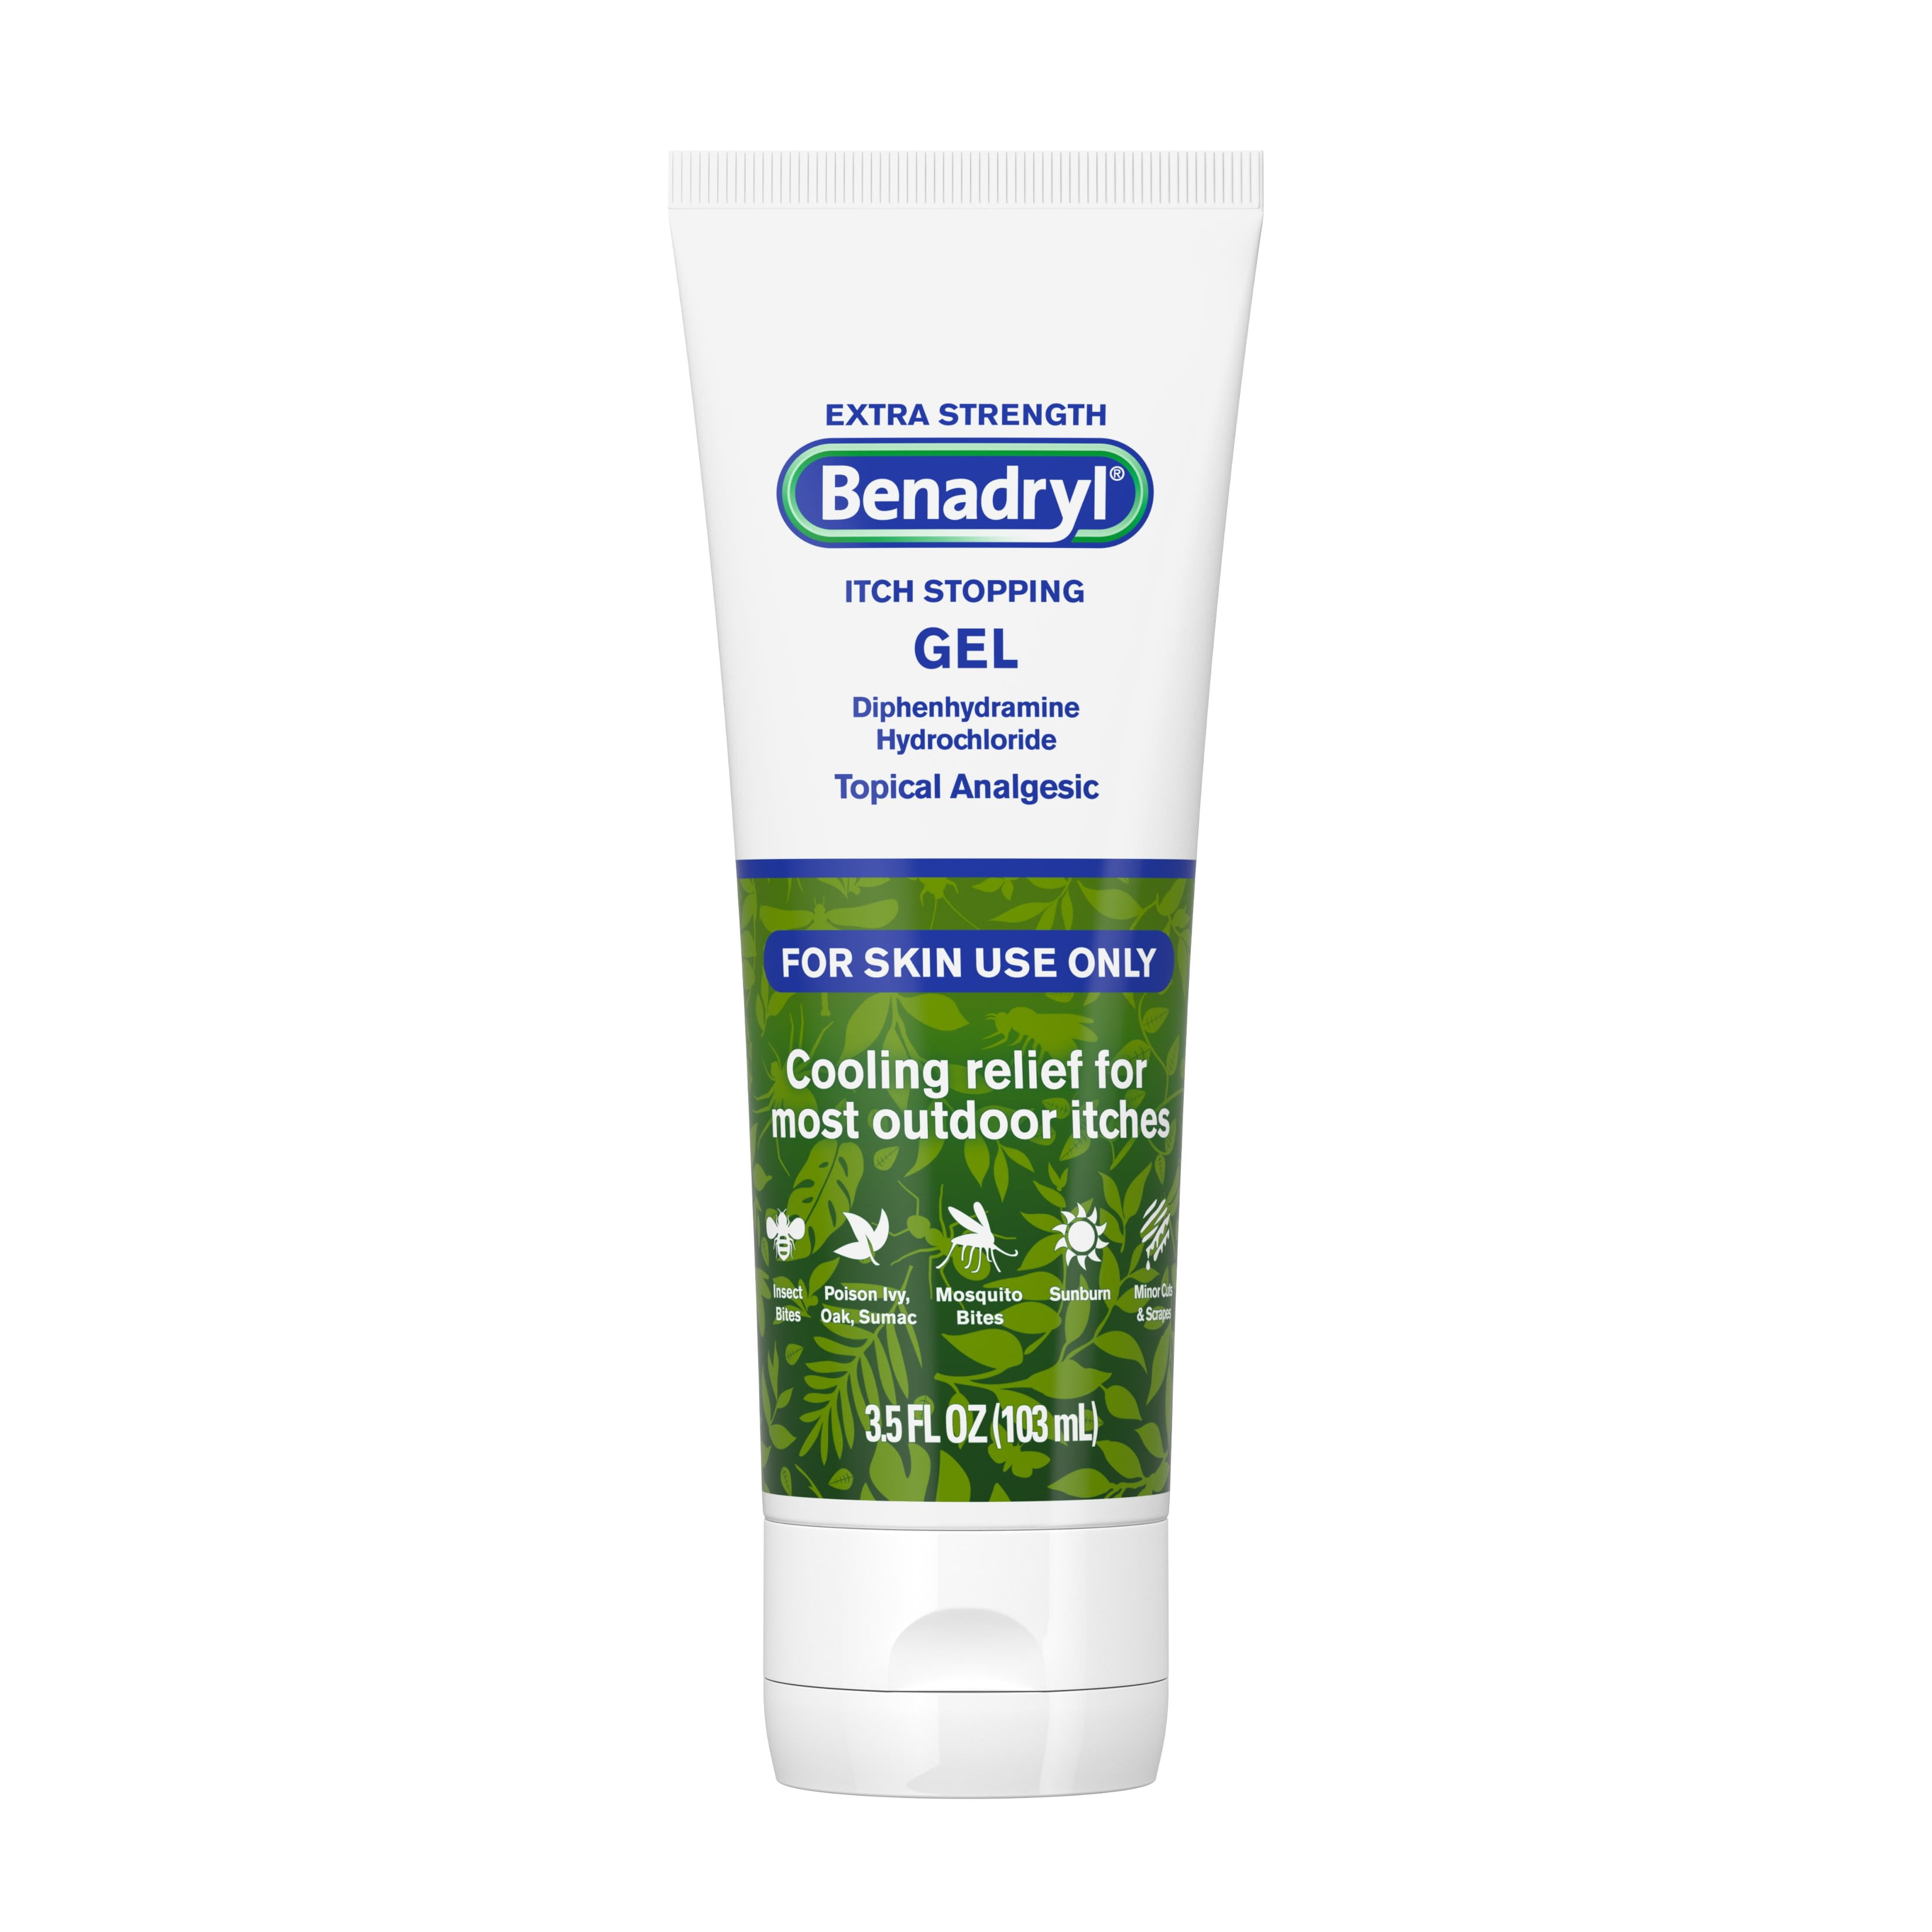 Benadryl Extra Strength Anti-Itch Topical Analgesic Gel, 3.5 fl. oz